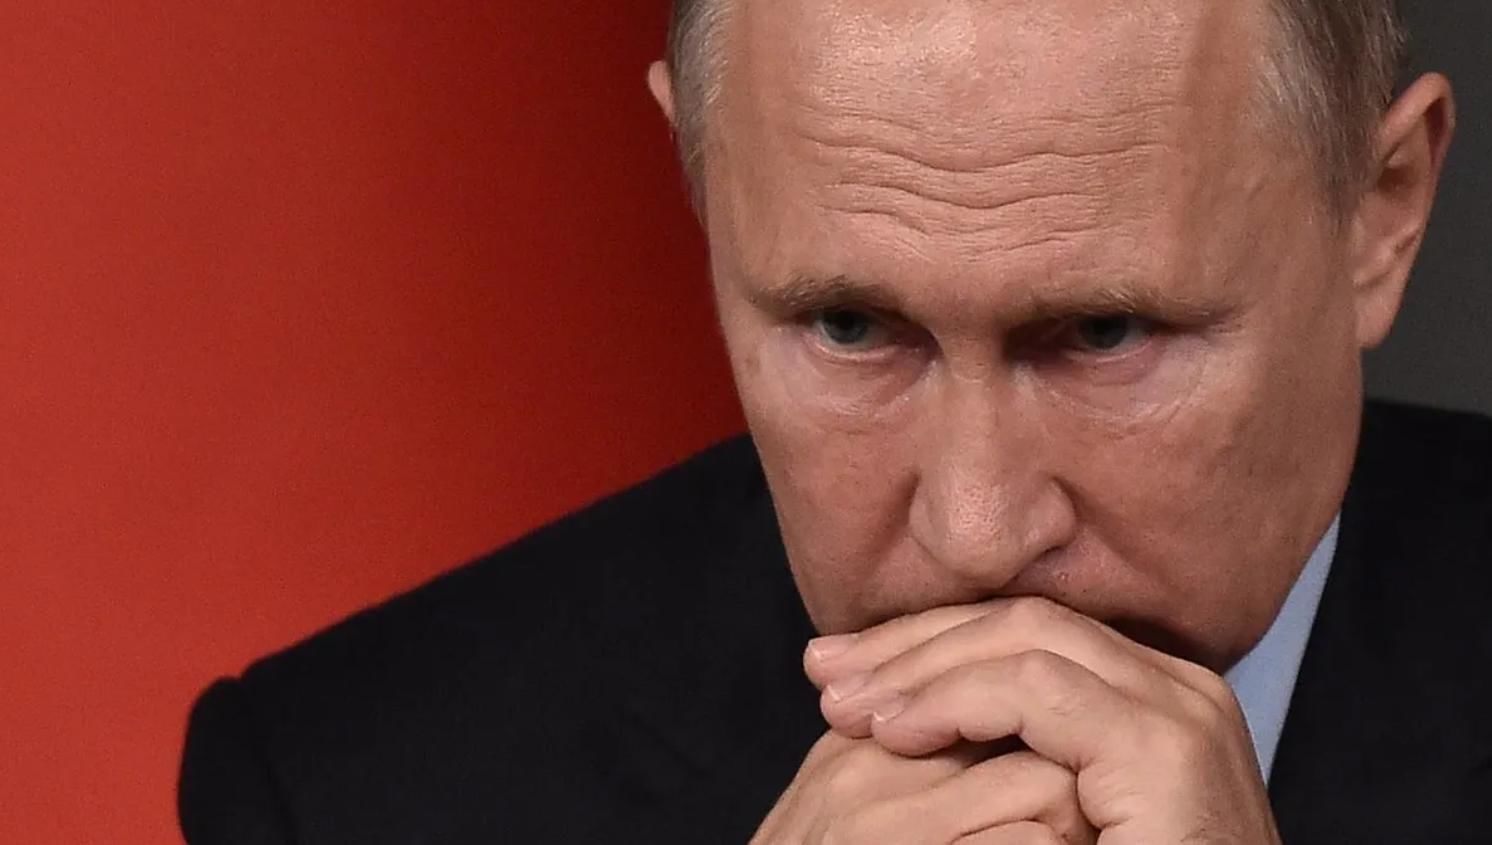 "Болезнь проявляется", - Соловей пояснил странное поведение Путина на встрече с Шойгу